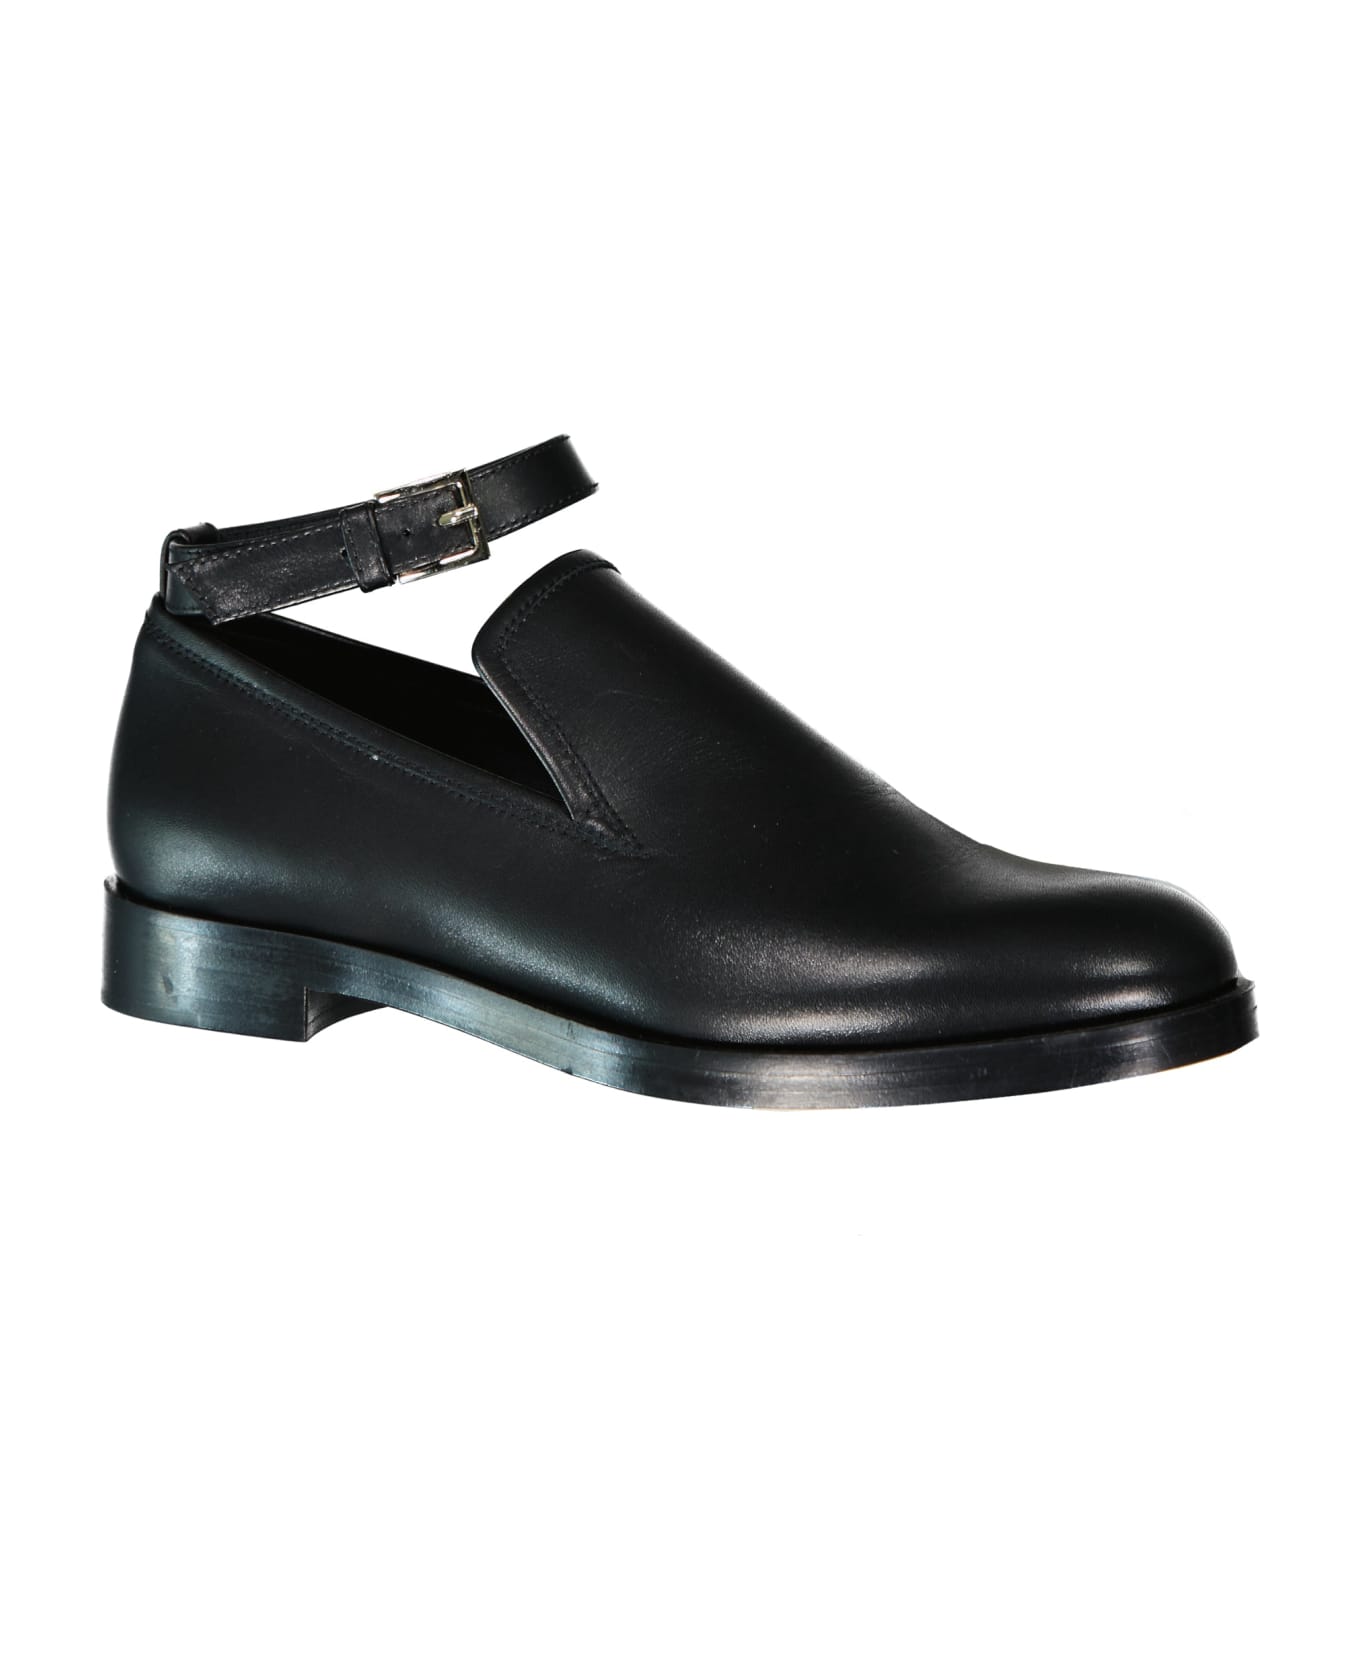 Max Mara Accessori Lawrie Leather Loafers - Black